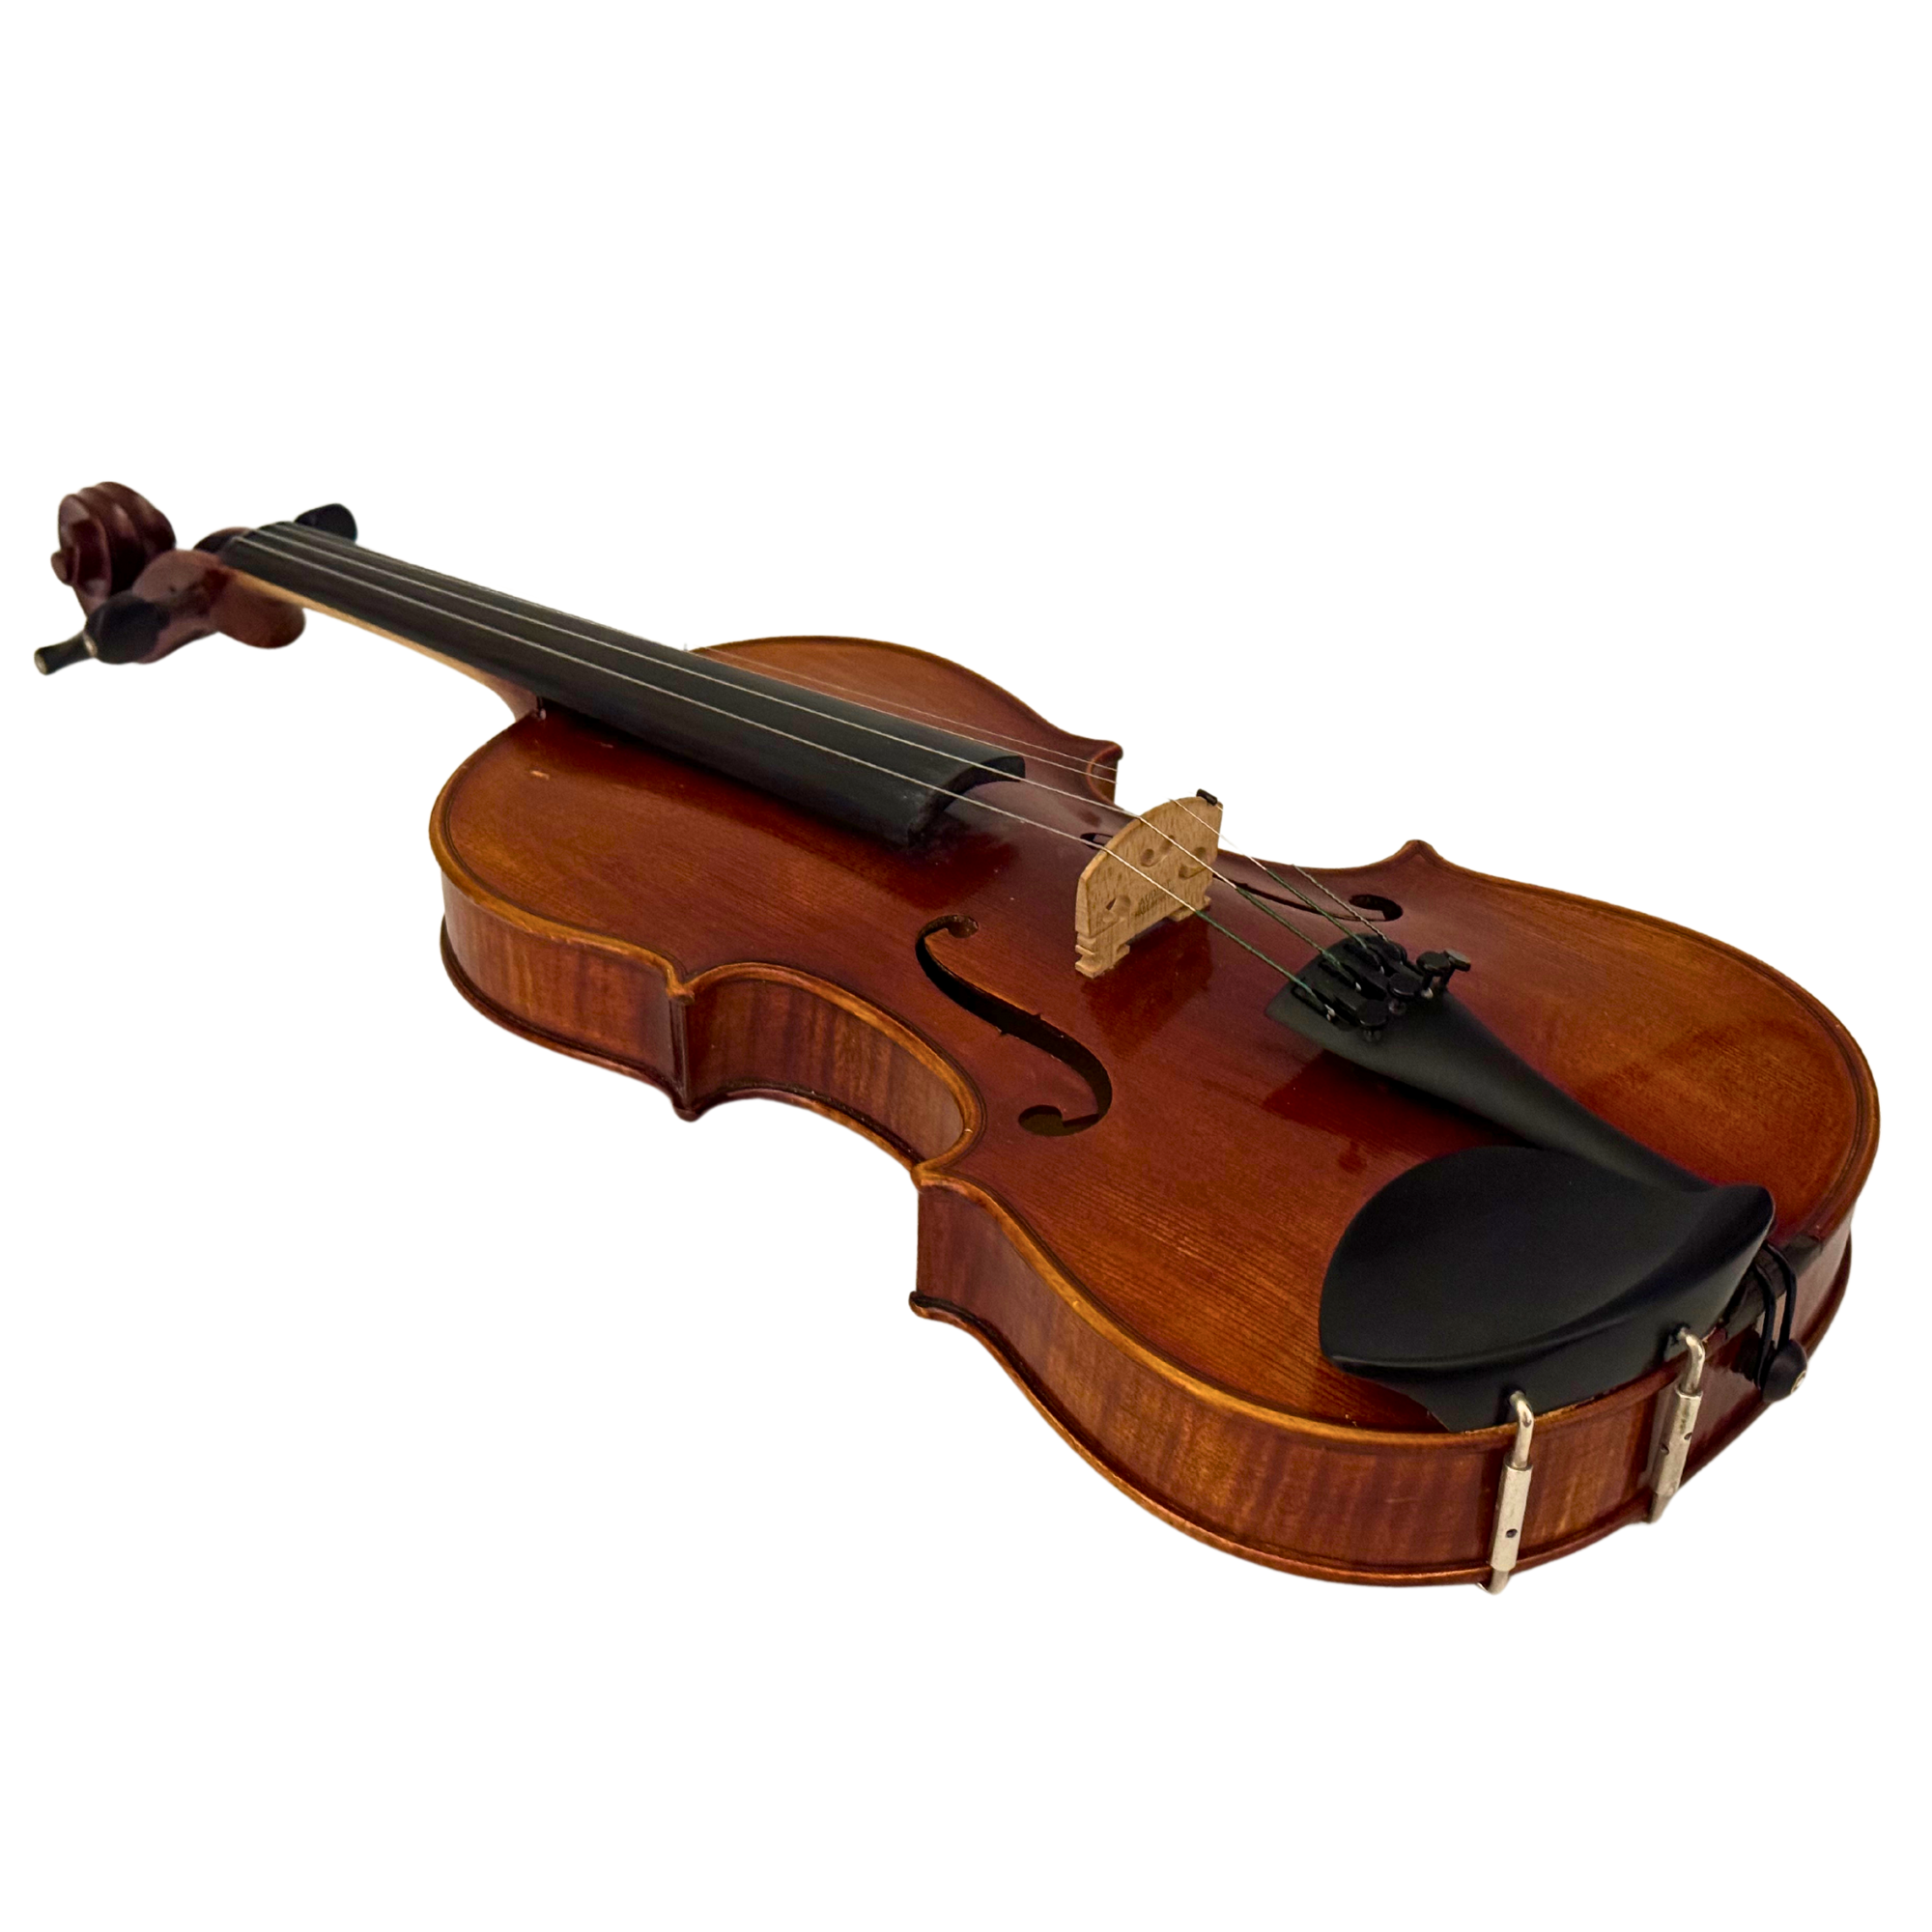 Sacconi Model Violin in action